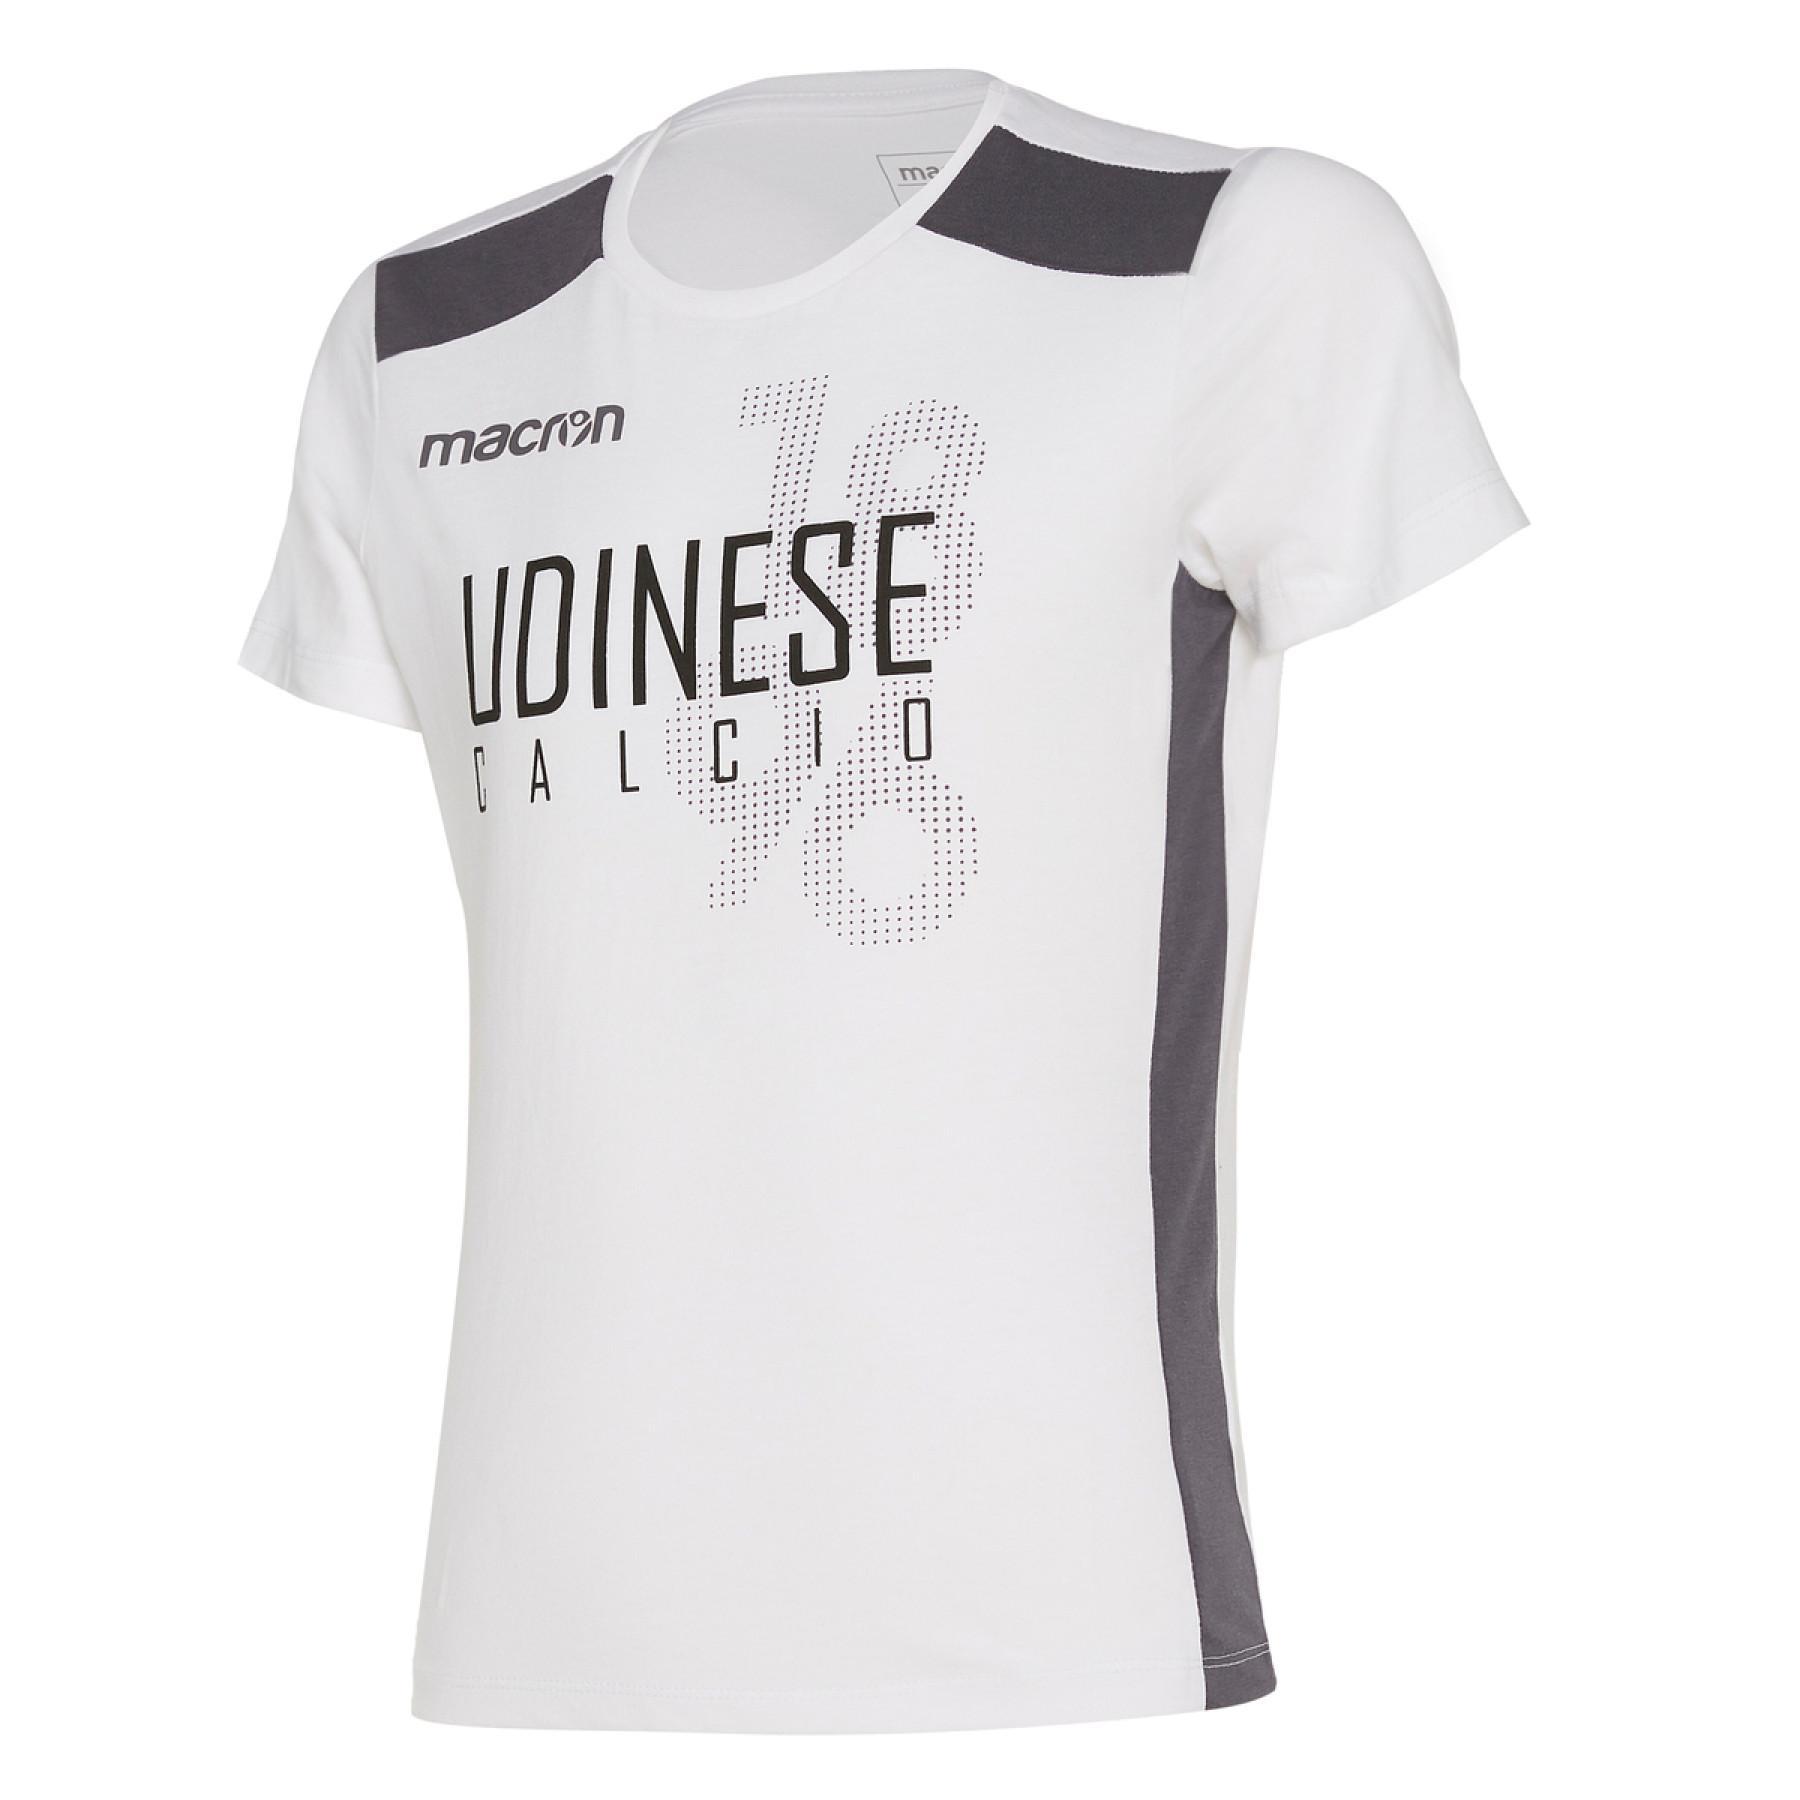 T-shirt criança algodão udinese 2019/2020